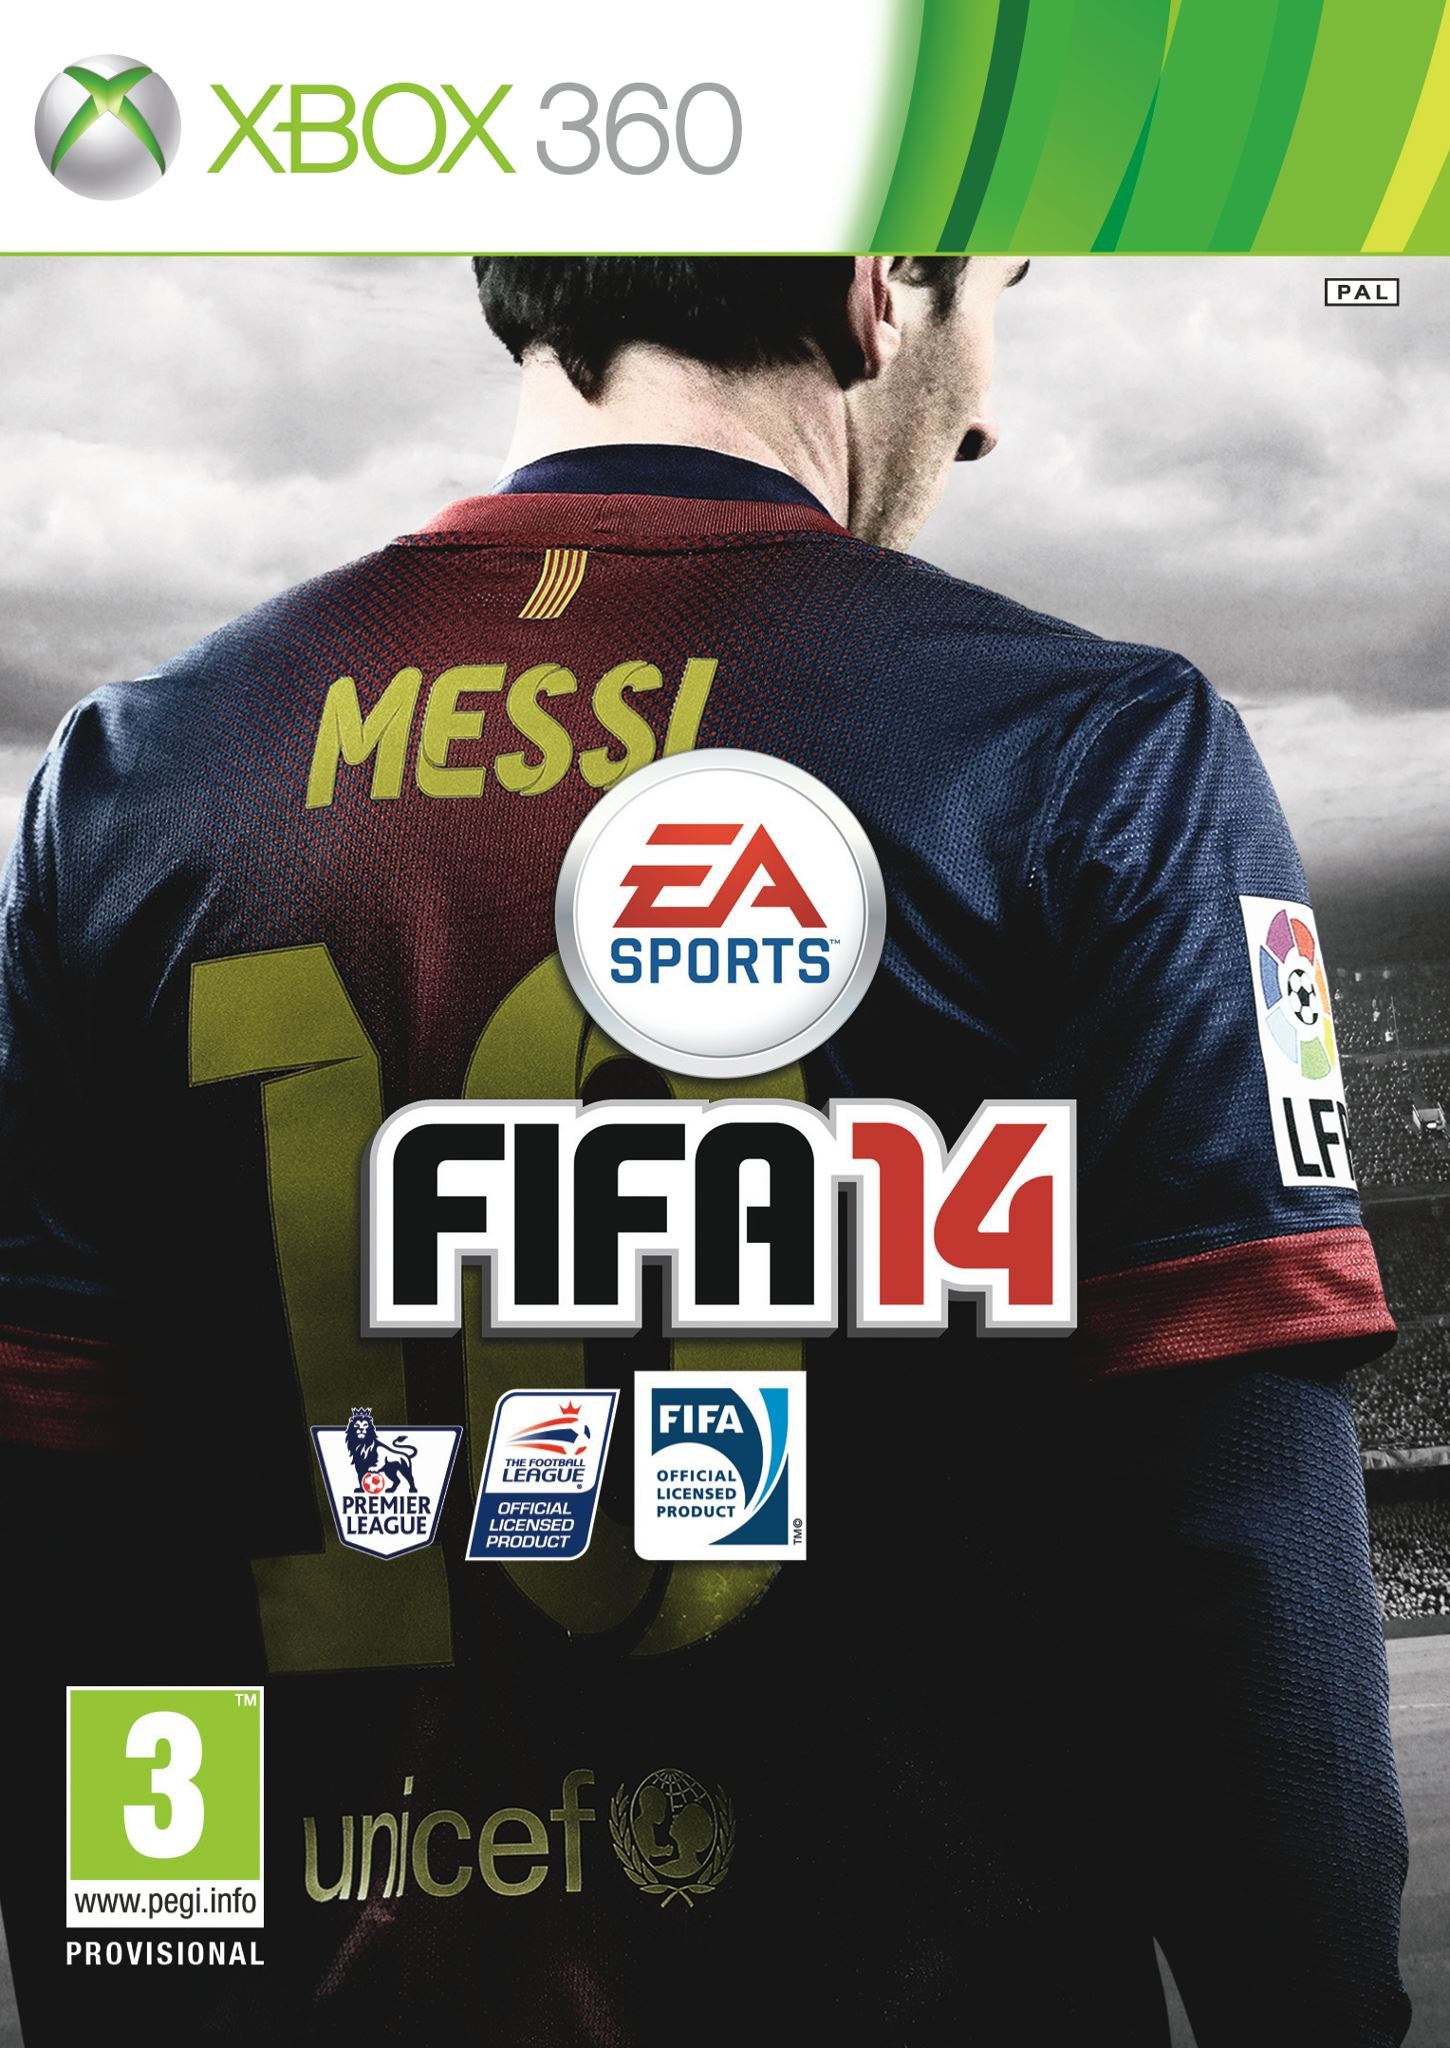 FIFA 14 Edición Estándar